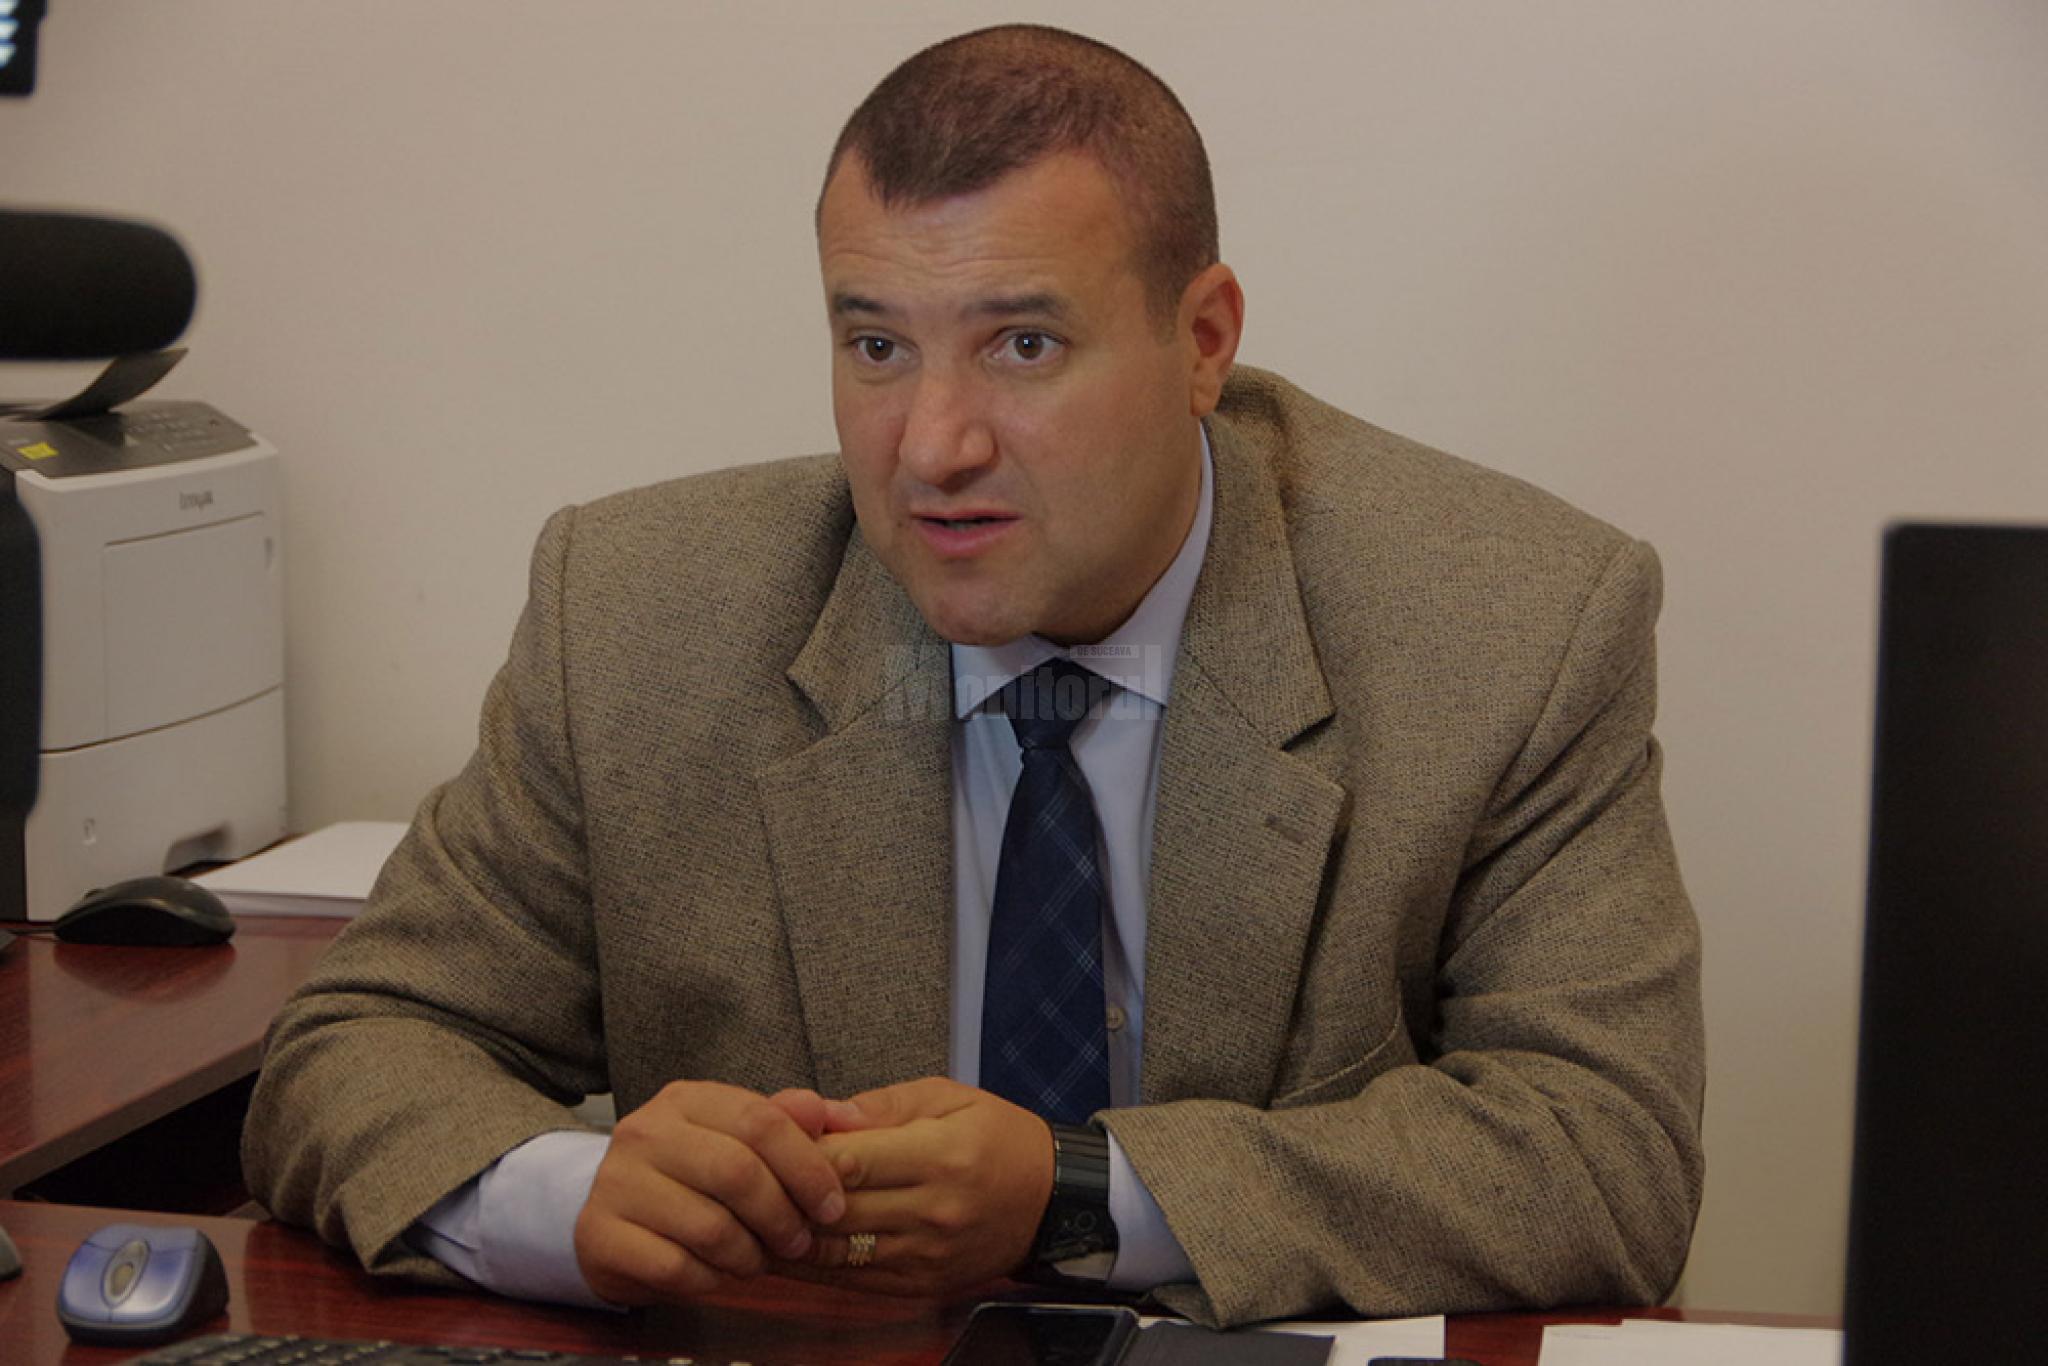 Comisarul sef Radu Obreja acest El Chapo de Suceava a agonisit aproape 600000 de euro